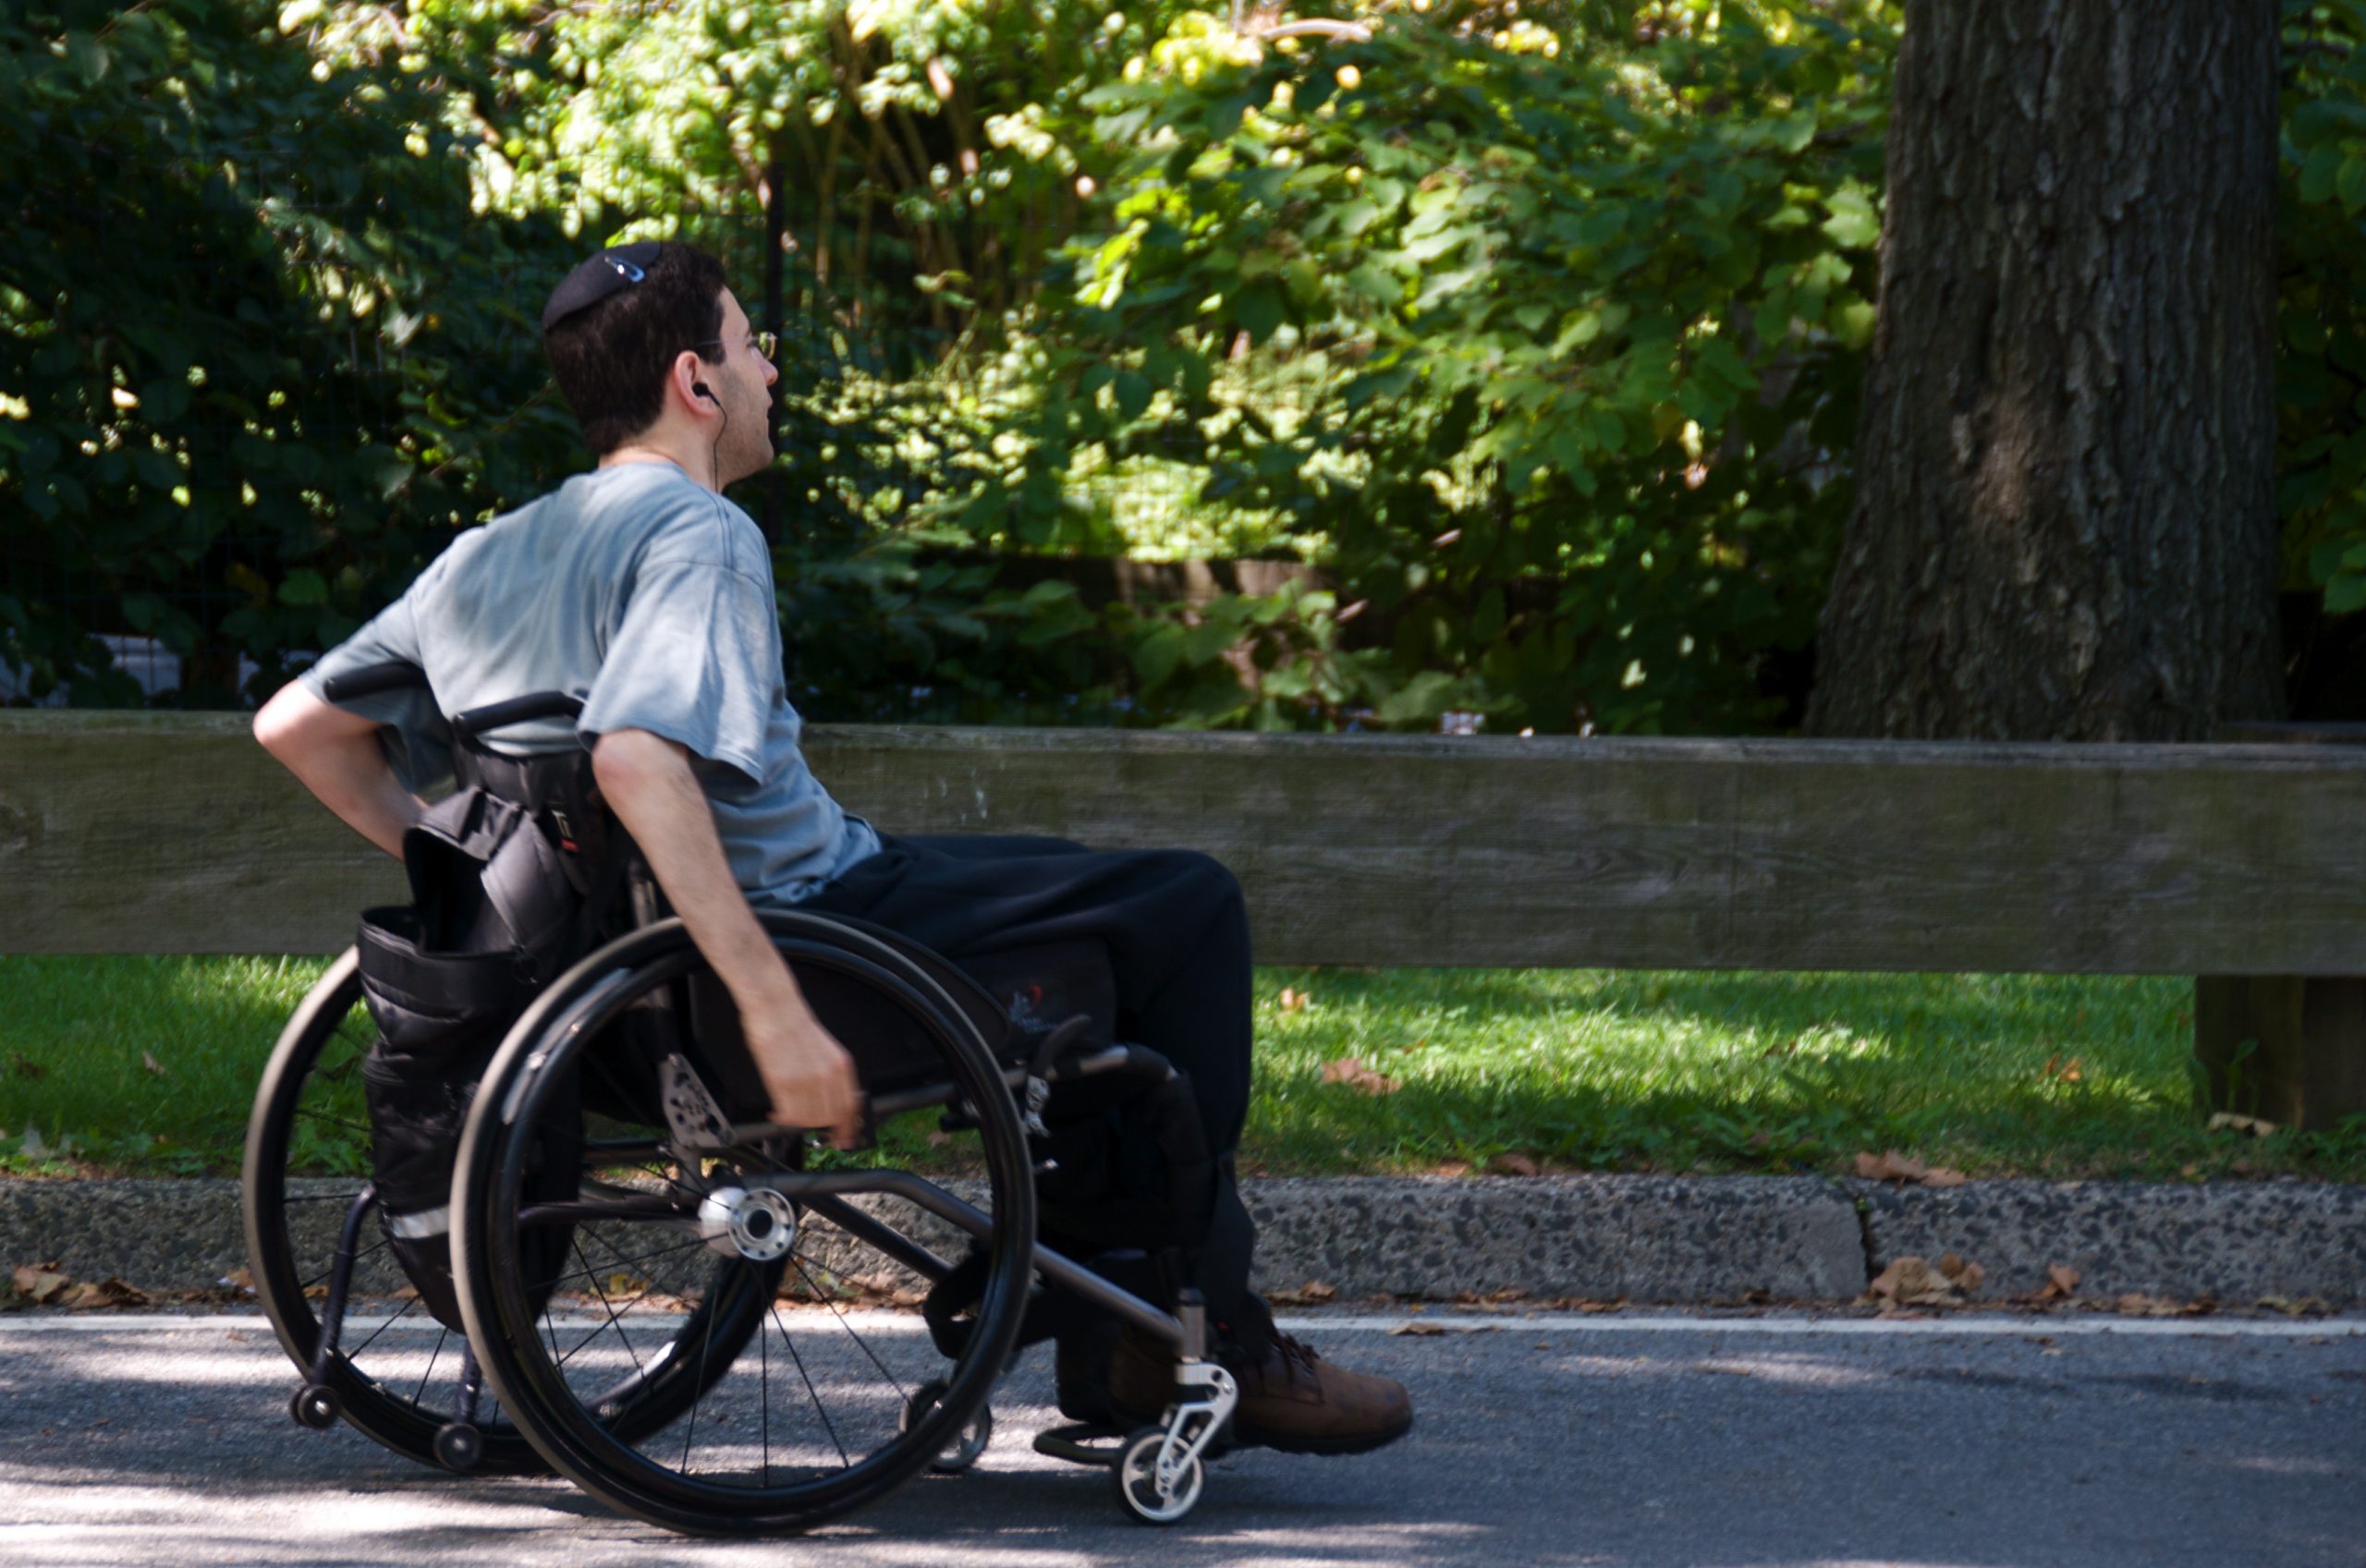 Инвалидность подростков. Челик в инвальдной коляске. Человек на коляске. Коляска для инвалидов. Человек в инвалидной коляске.